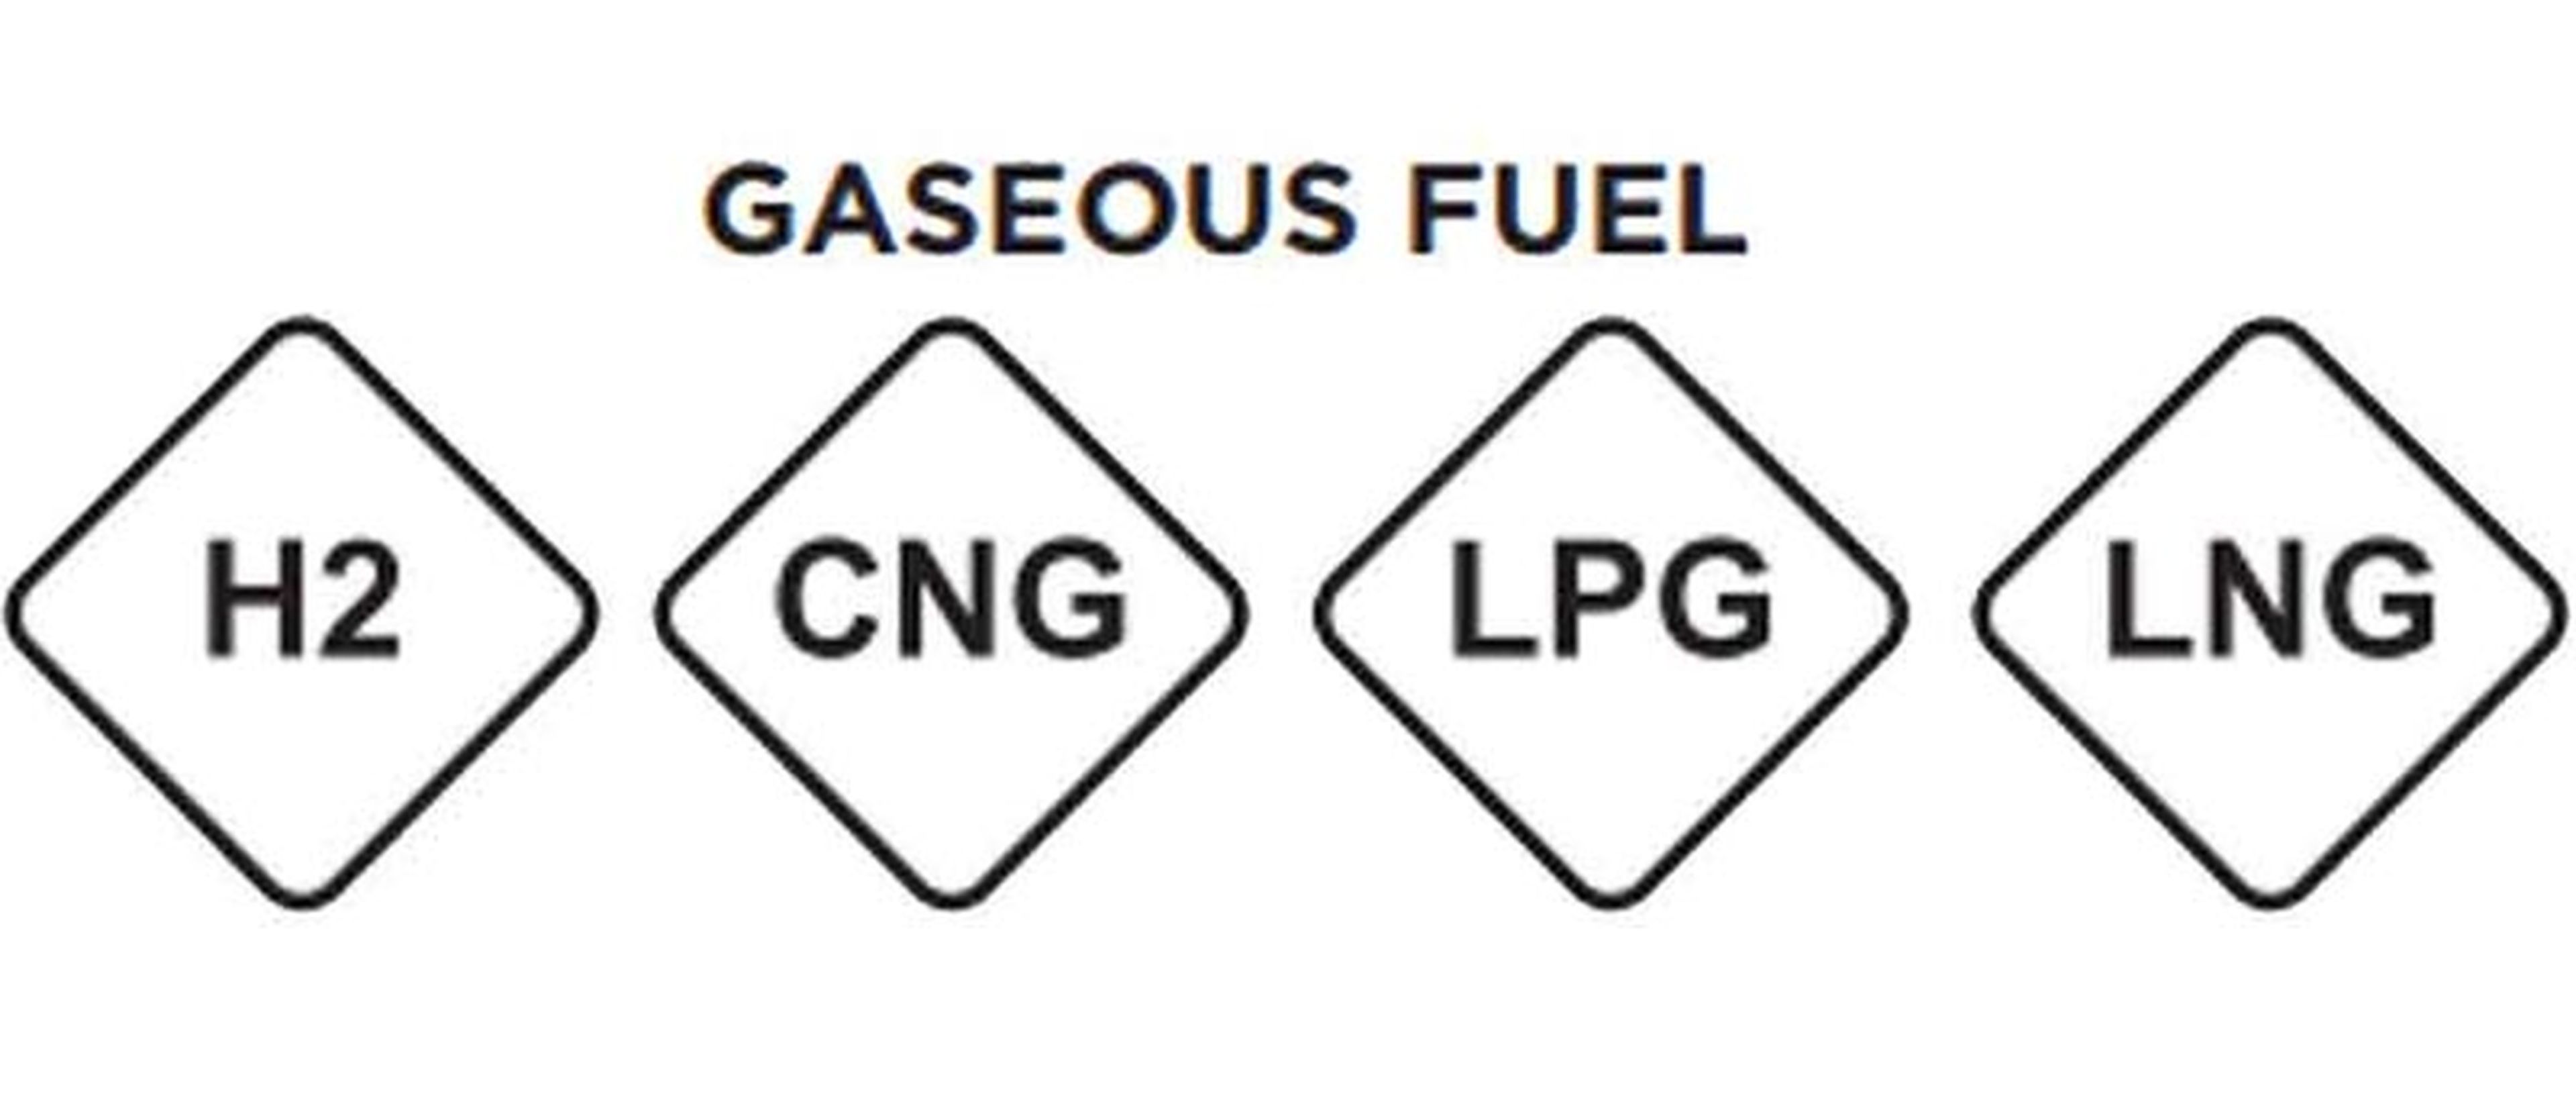 Combustibles gaseosos